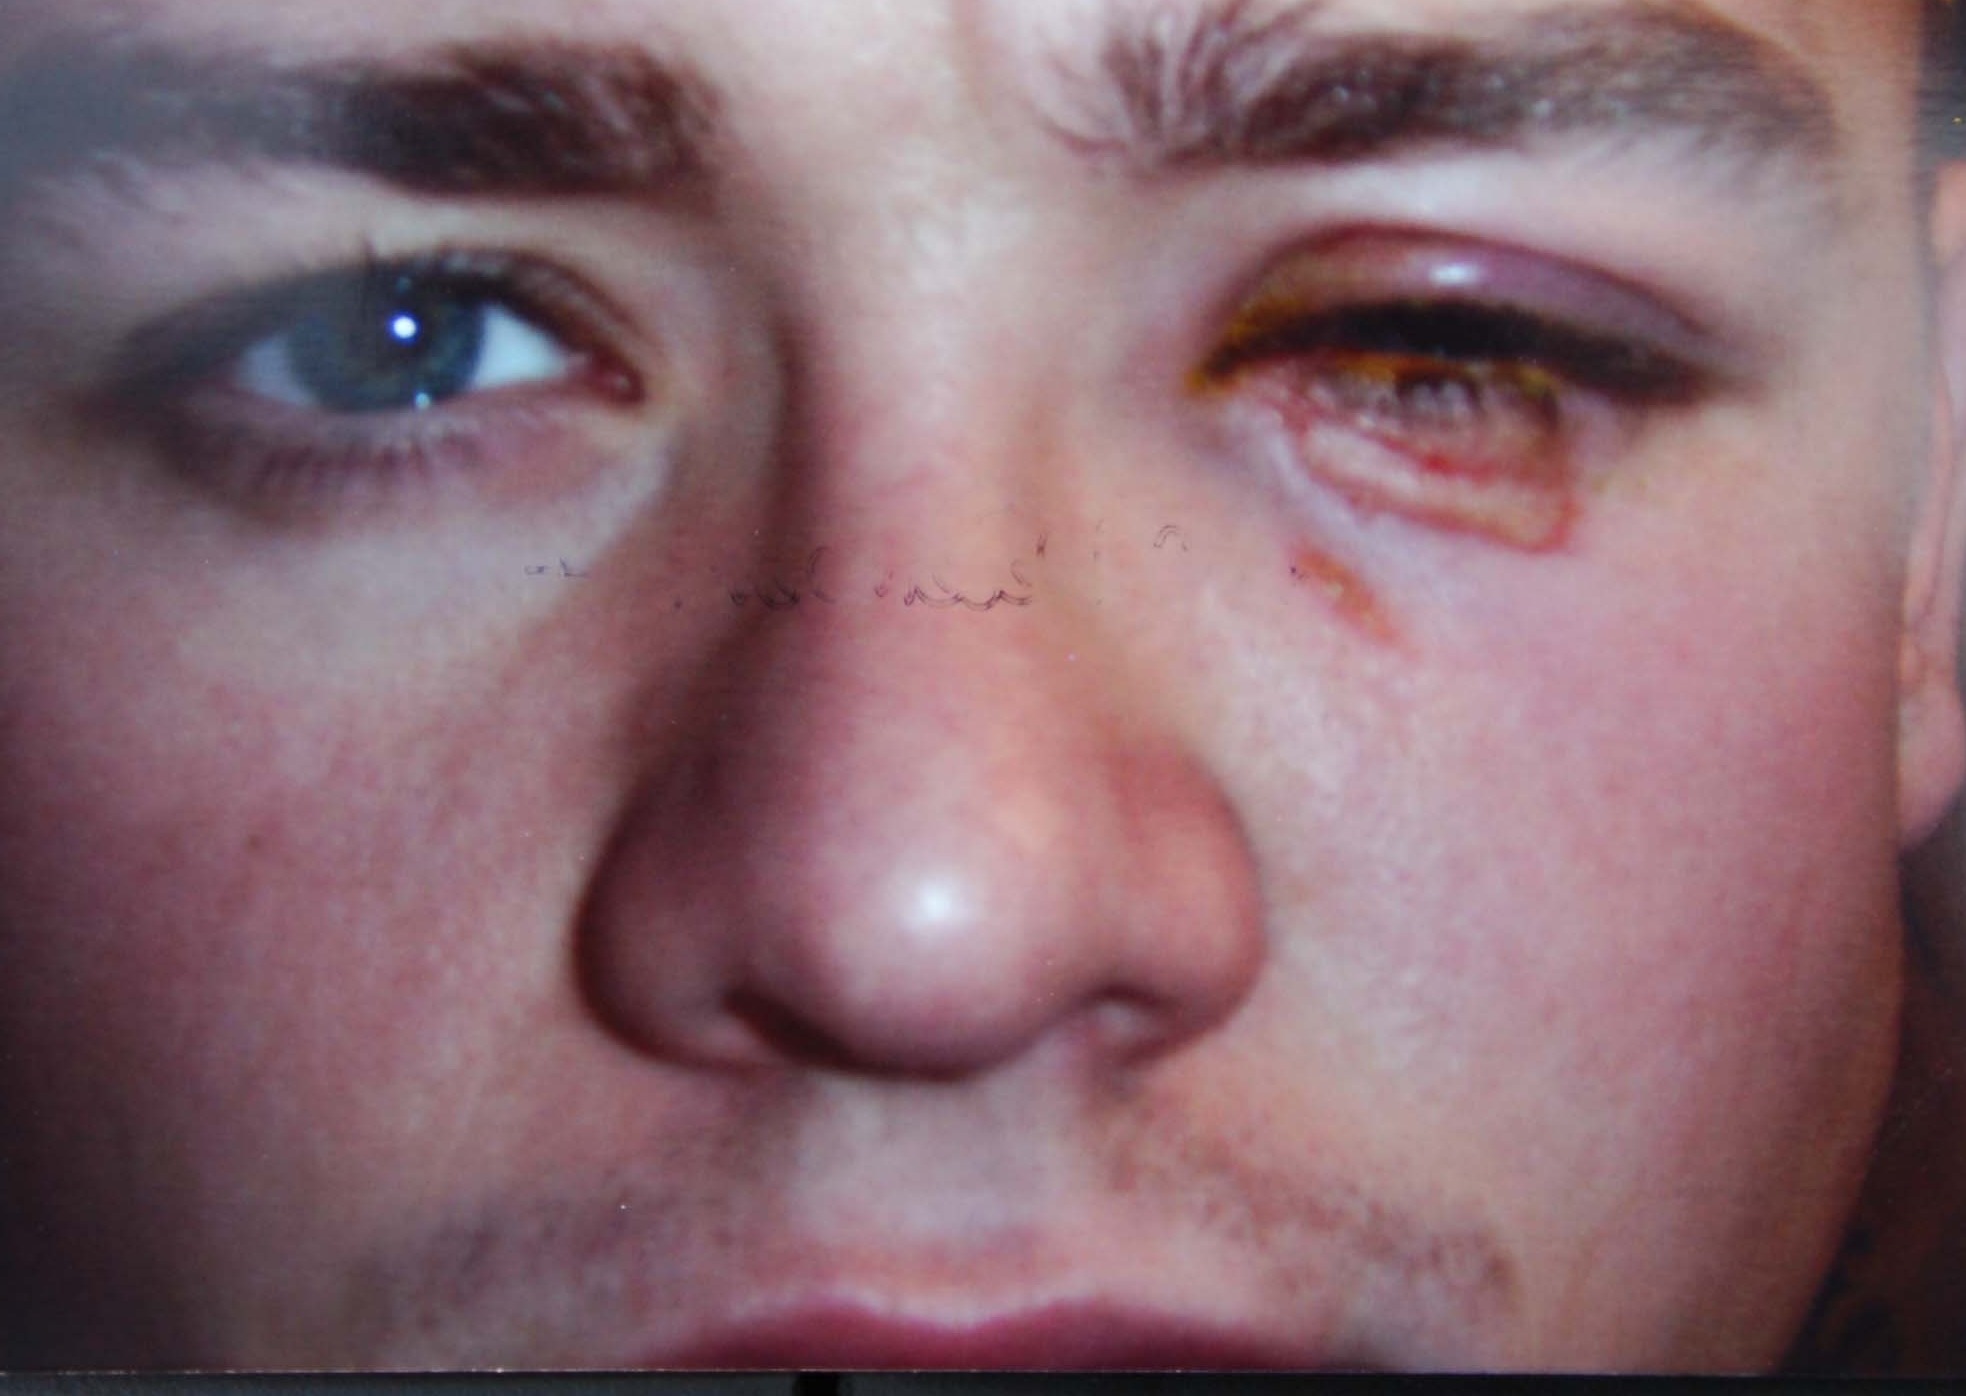 Jamie Tandys Auge wurde schwer beschädigt, nachdem Joey Barton ihn mit einer brennenden Zigarre geschlagen hatte